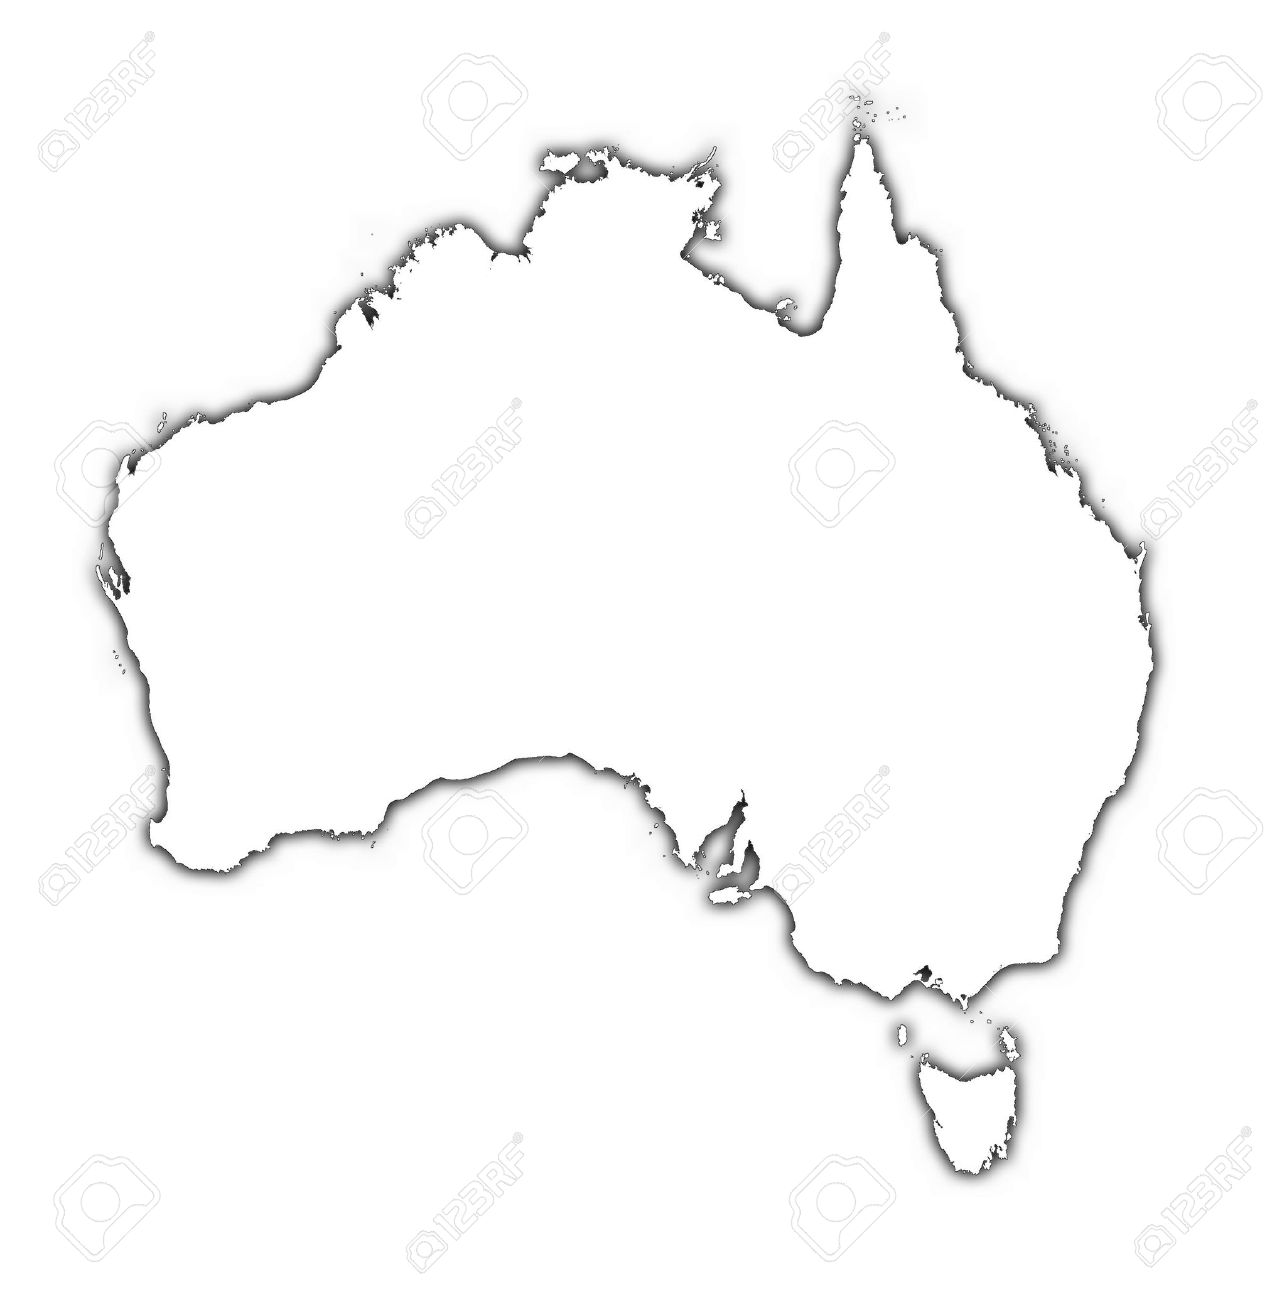 Урок по географии для 7 класса Природа Австралии